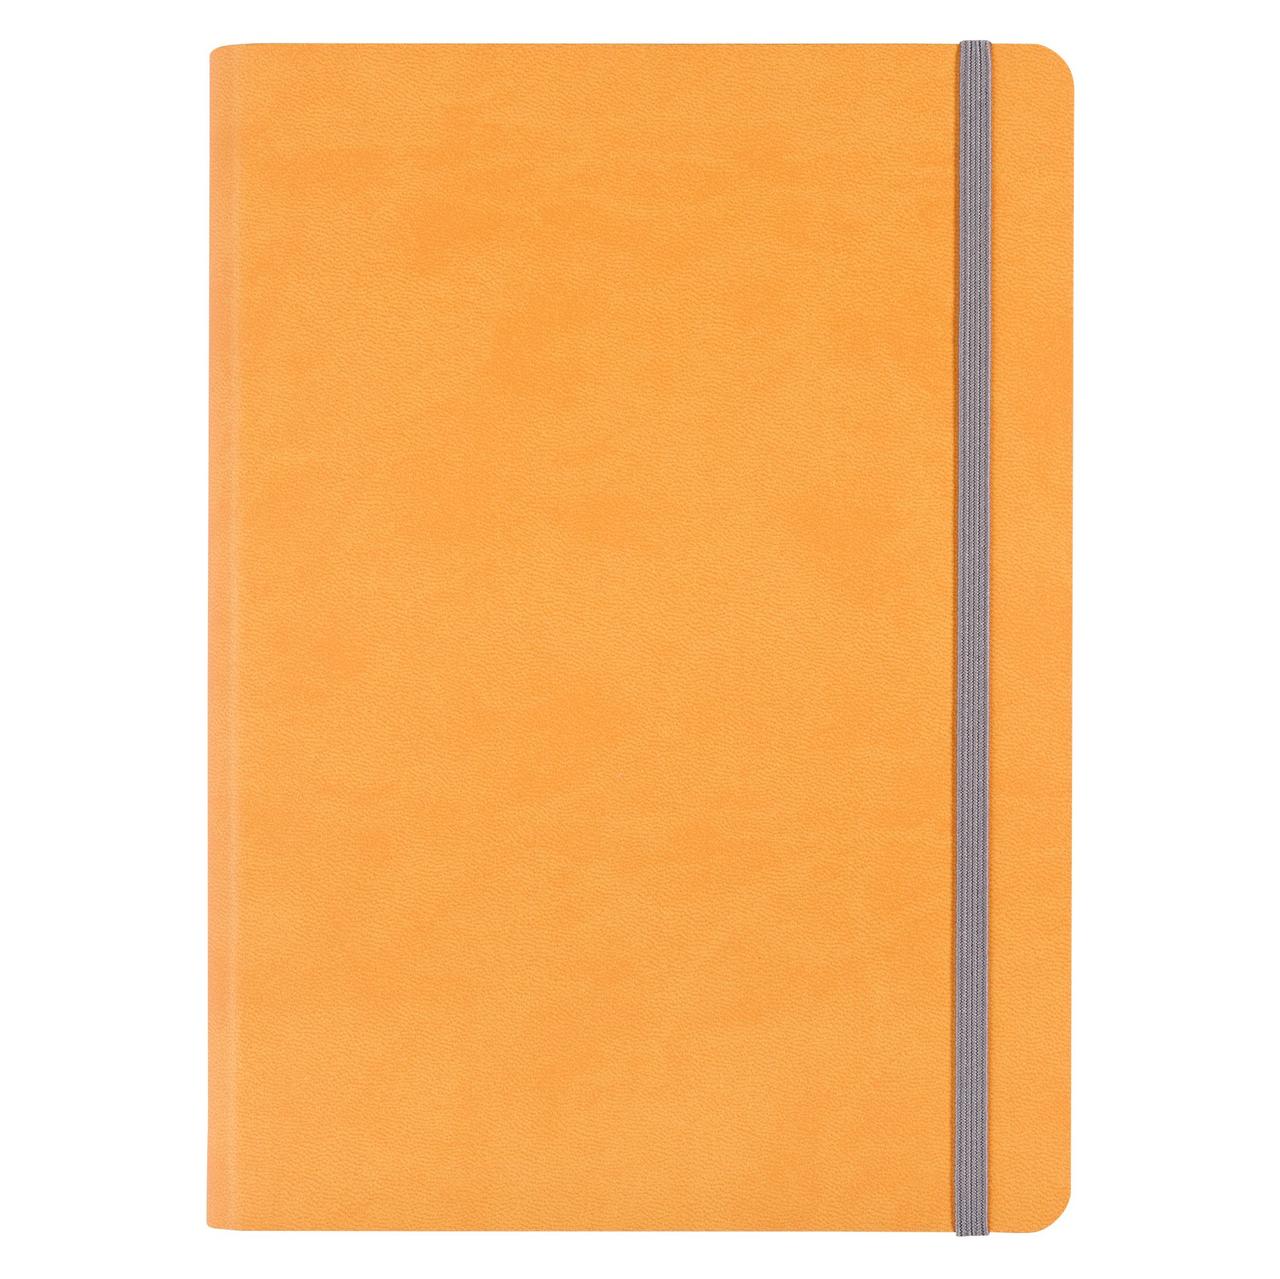 Ежедневник Vivien, недатированный, оранжевый (артикул 6653.81), фото 1